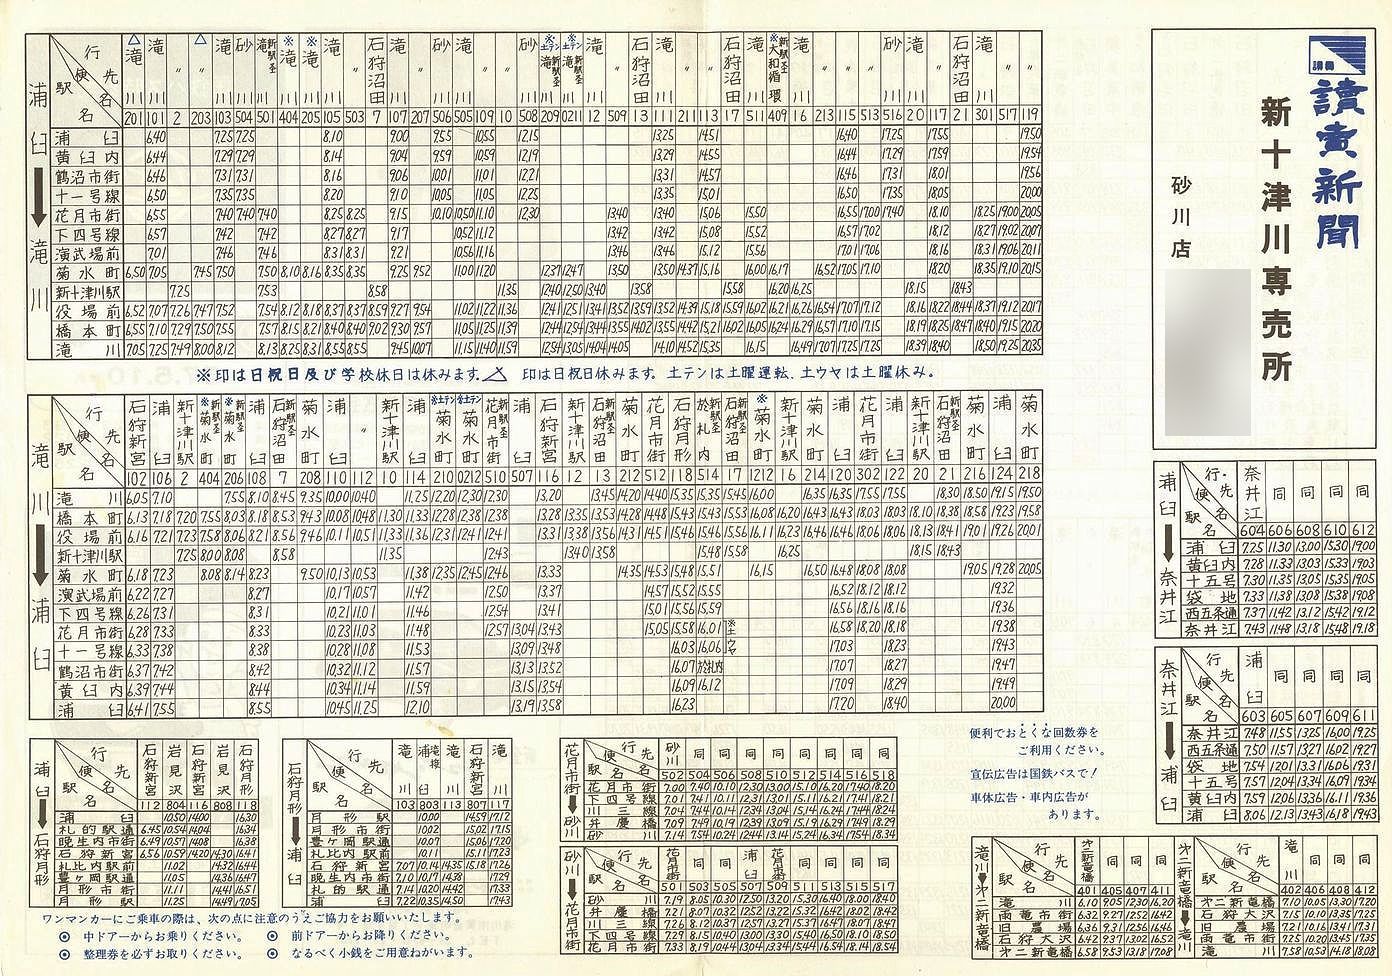 1982-05-10改正_国鉄バス_石狩線時刻表裏面